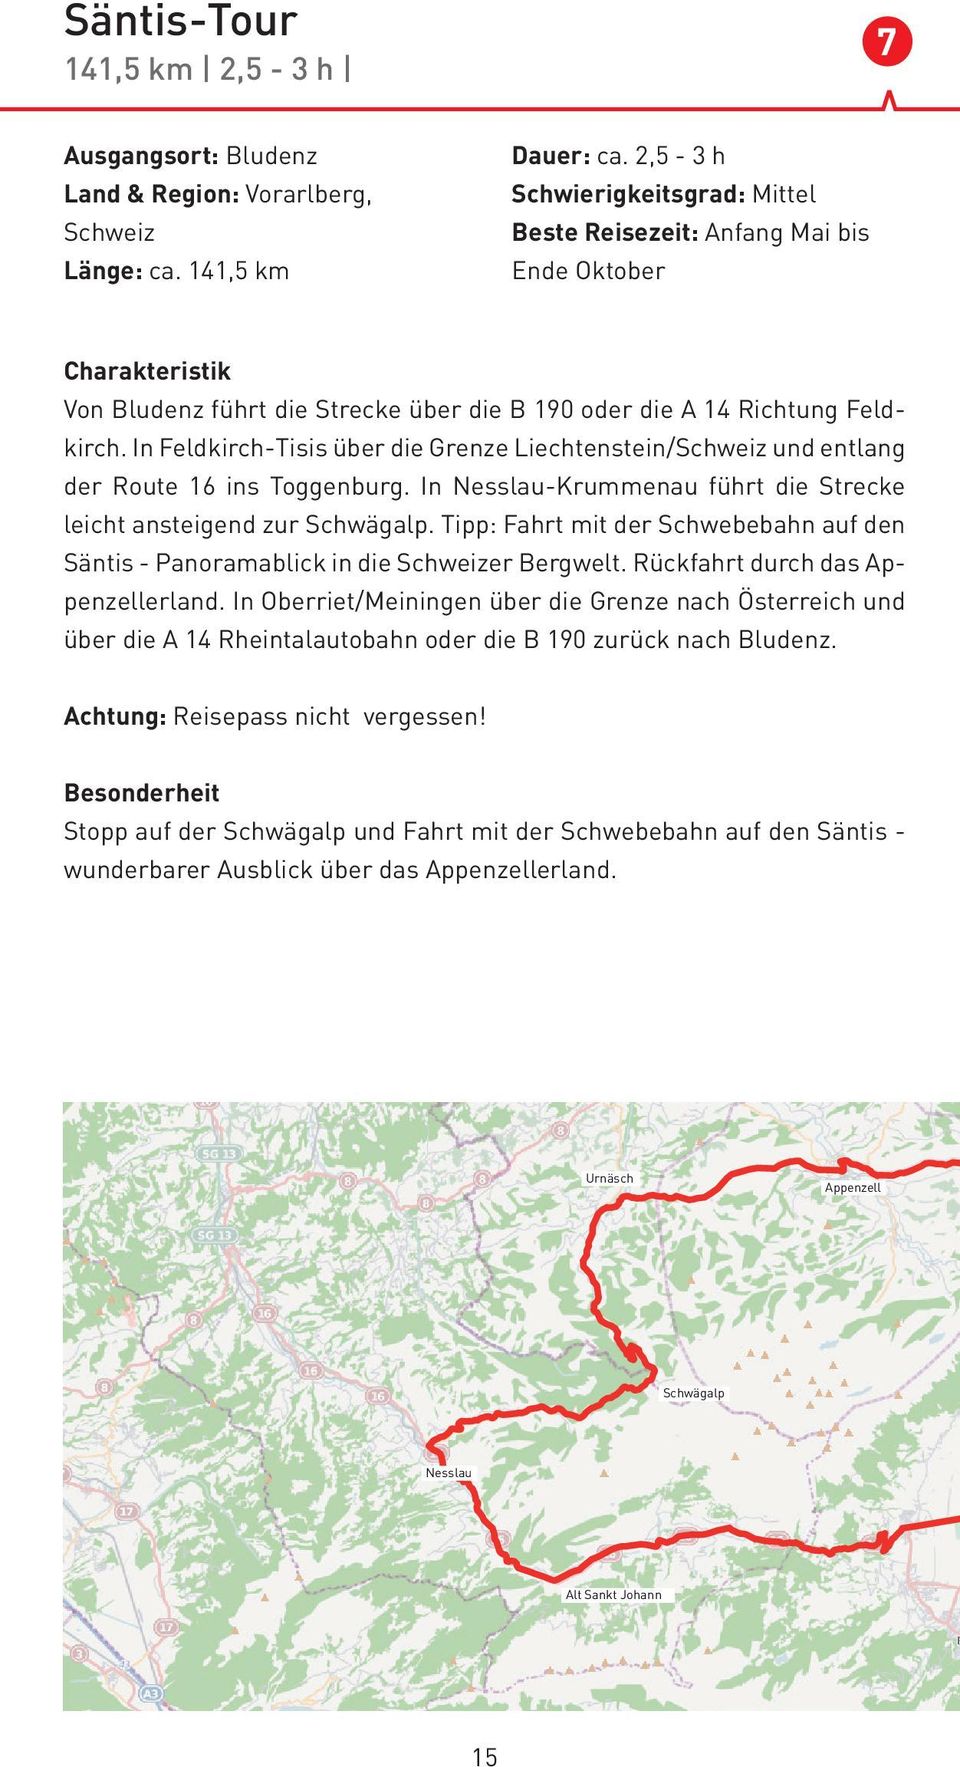 In Feldkirch-Tisis über die Grenze Liechtenstein/Schweiz und entlang der Route 16 ins Toggenburg. In Nesslau-Krummenau führt die Strecke leicht ansteigend zur Schwägalp.